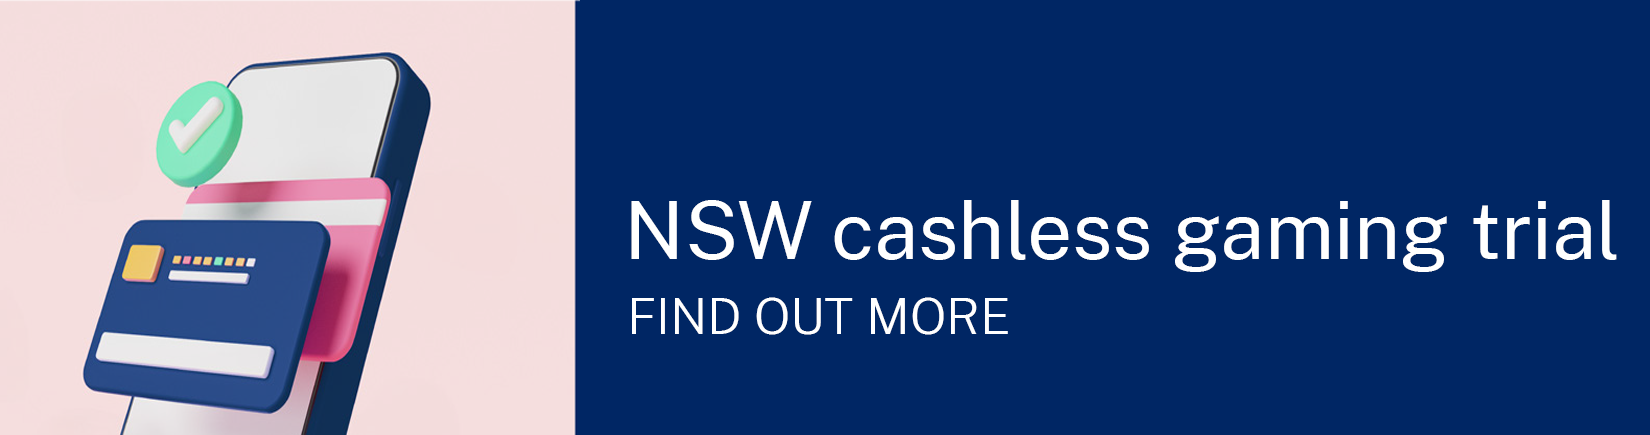 NSW cashless gaming trial